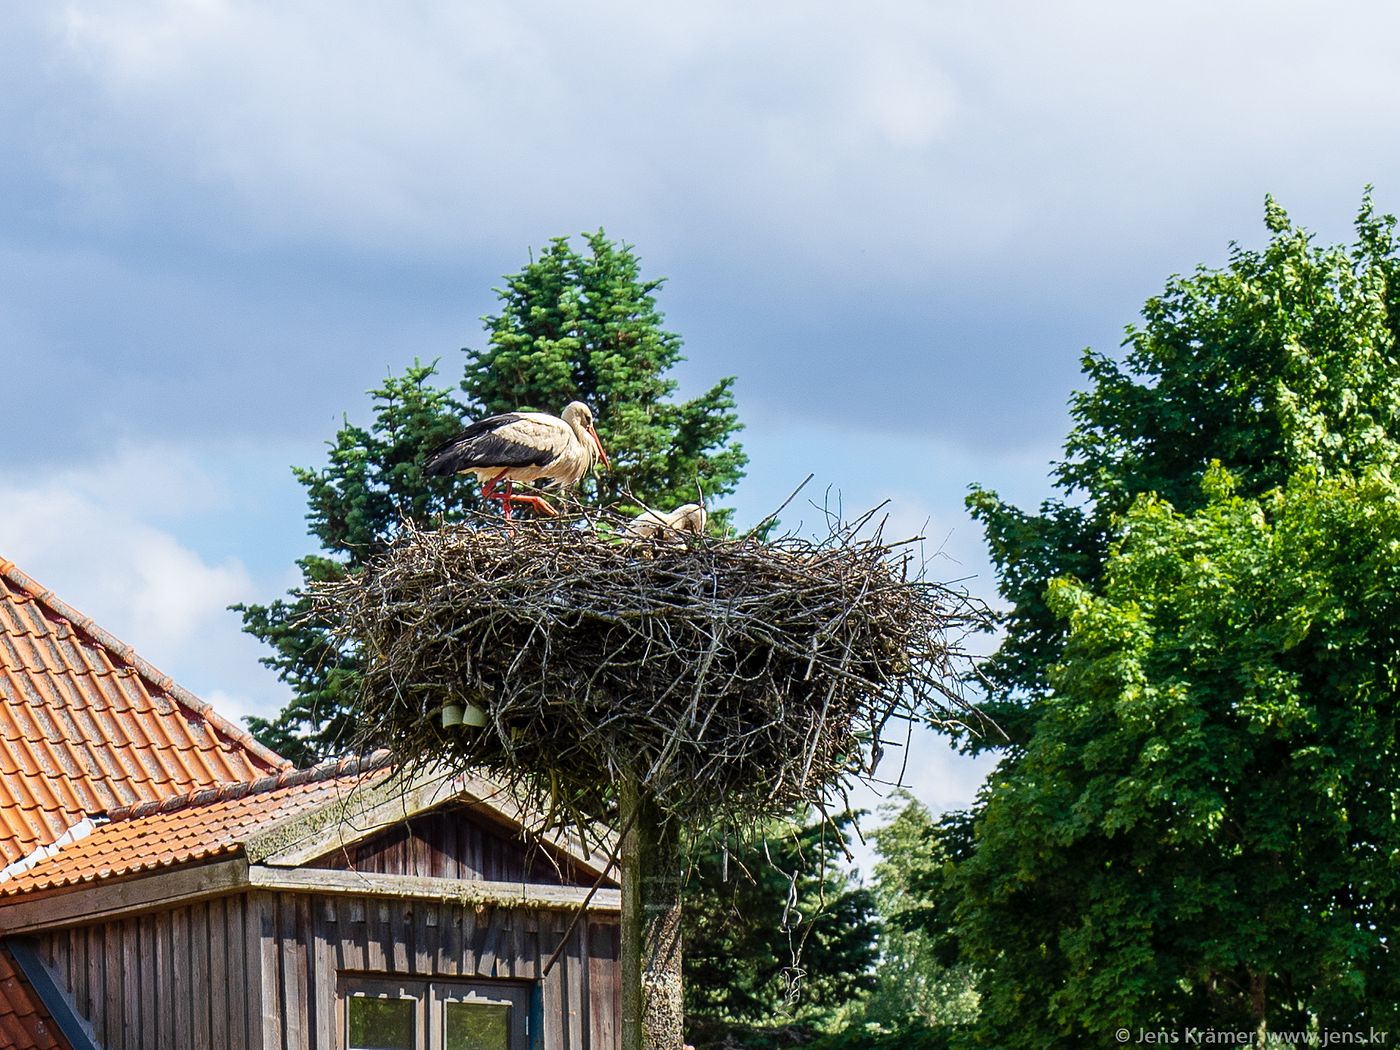 Stork's nest